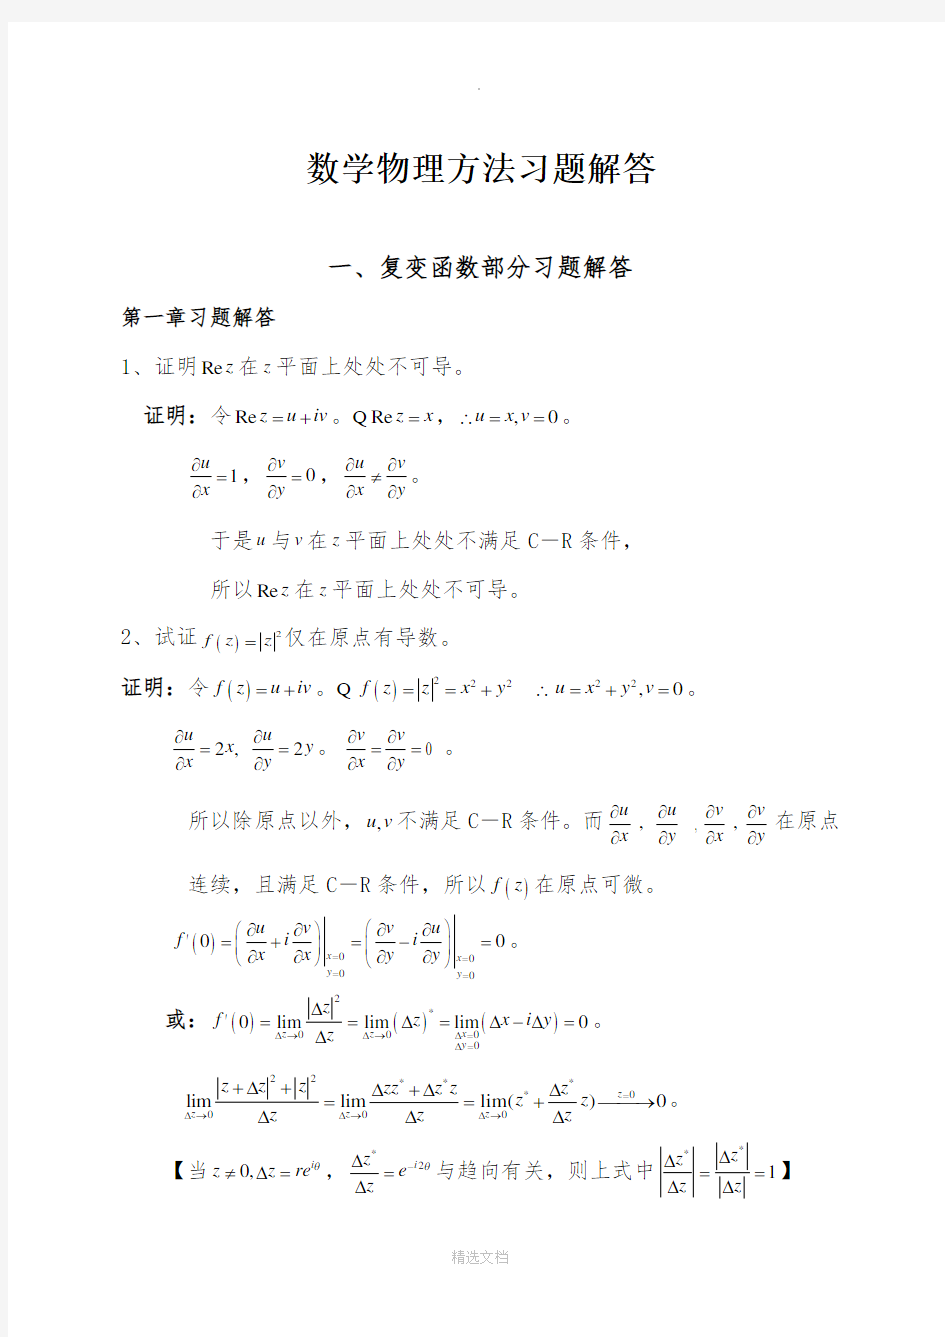 数学物理方法习题解答(完整版)44767